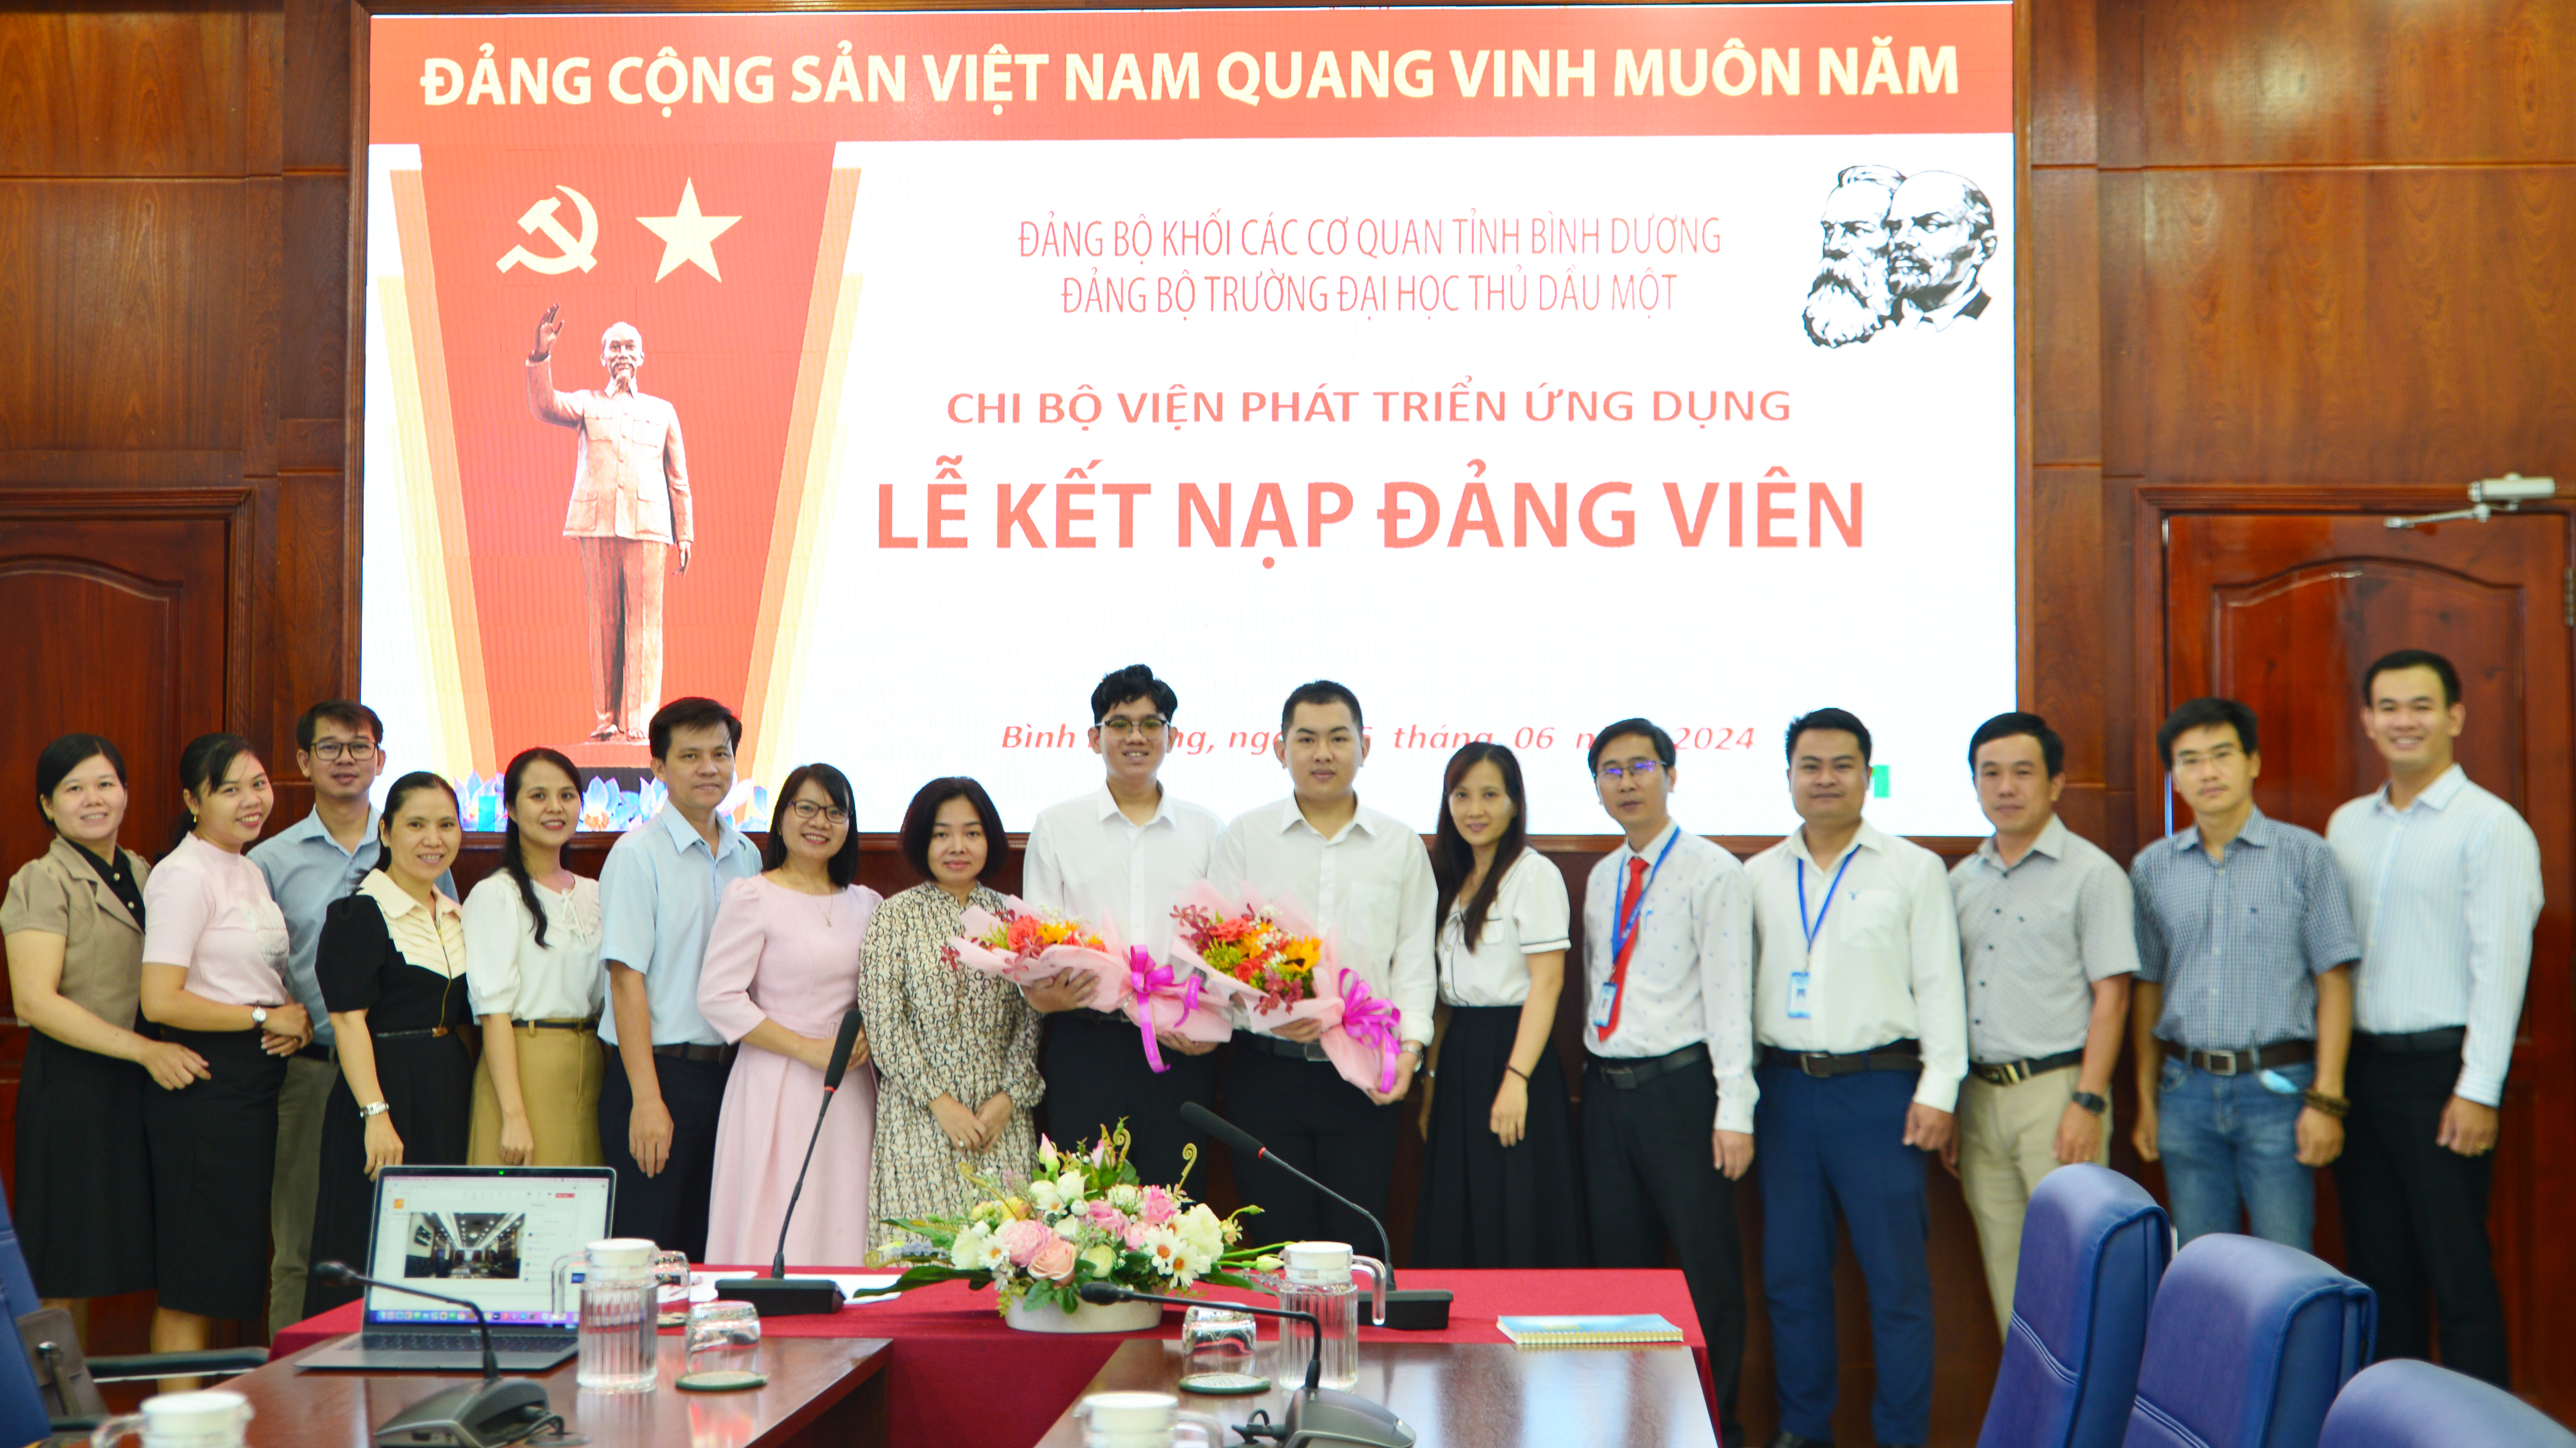 Kết nạp Đảng cho sinh viên Lê Thành Huy Bảo và Lê Minh Tân